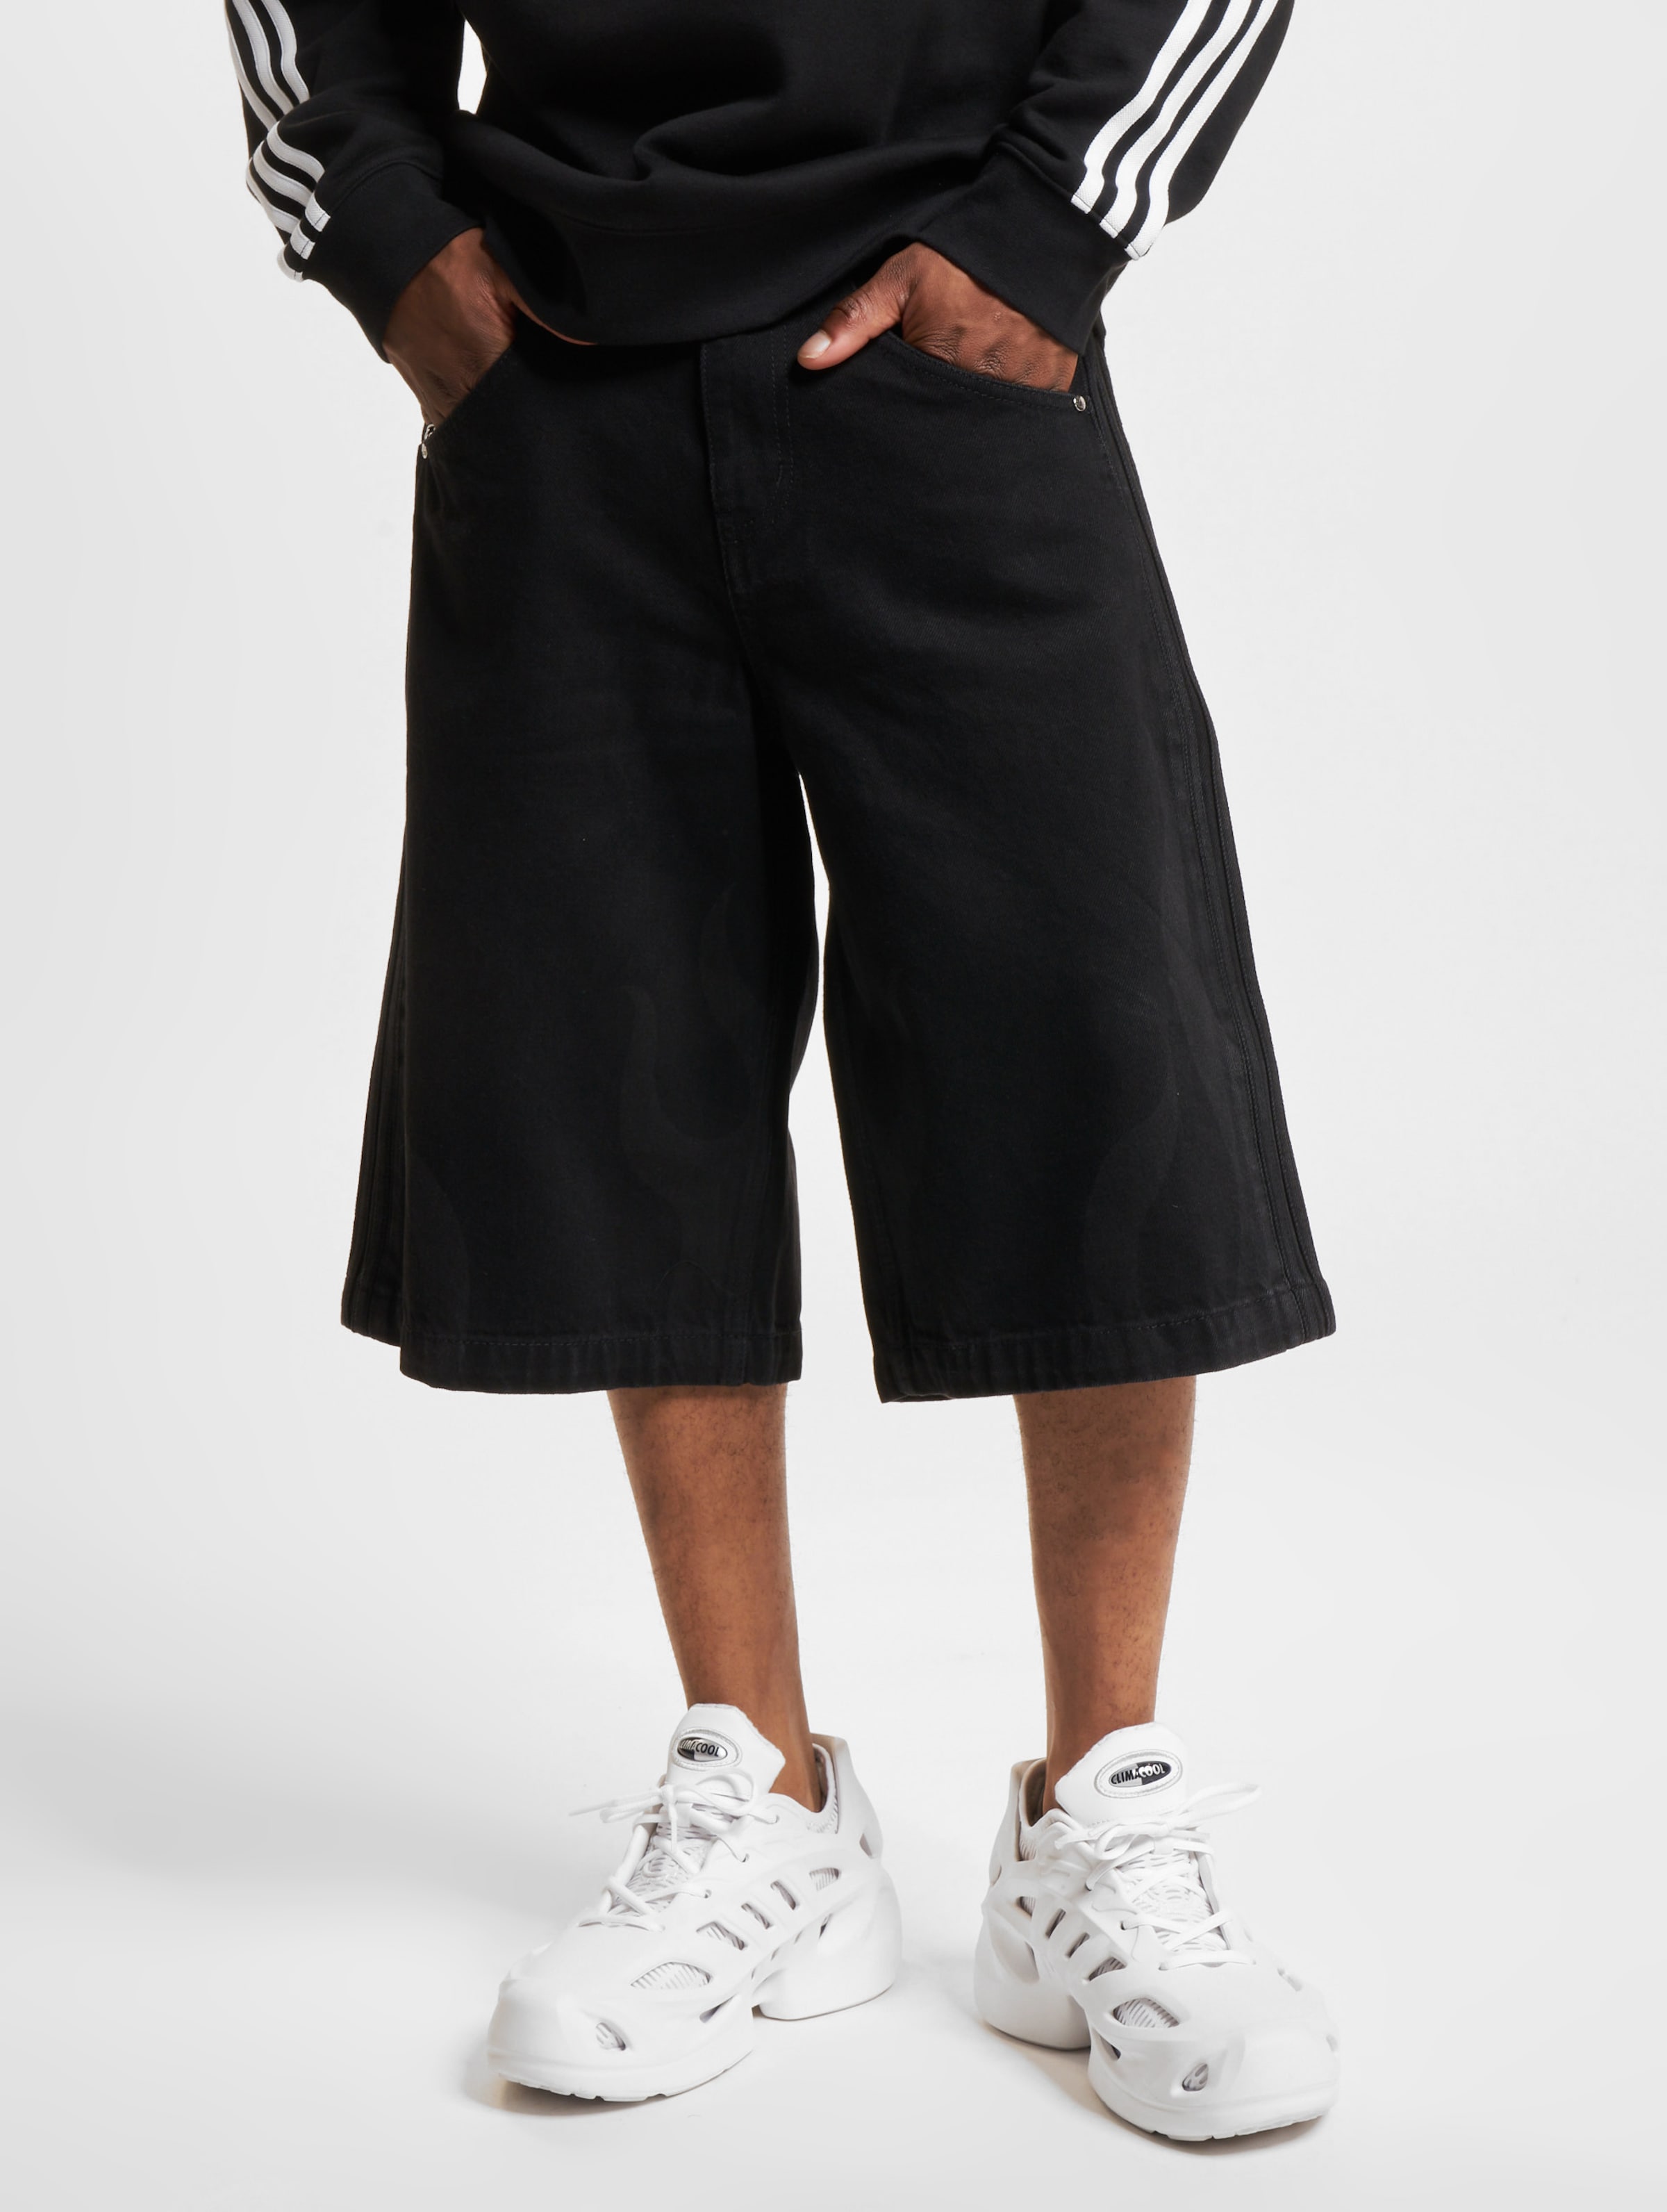 adidas Originals Flames Shorts Männer,Unisex op kleur zwart, Maat 34